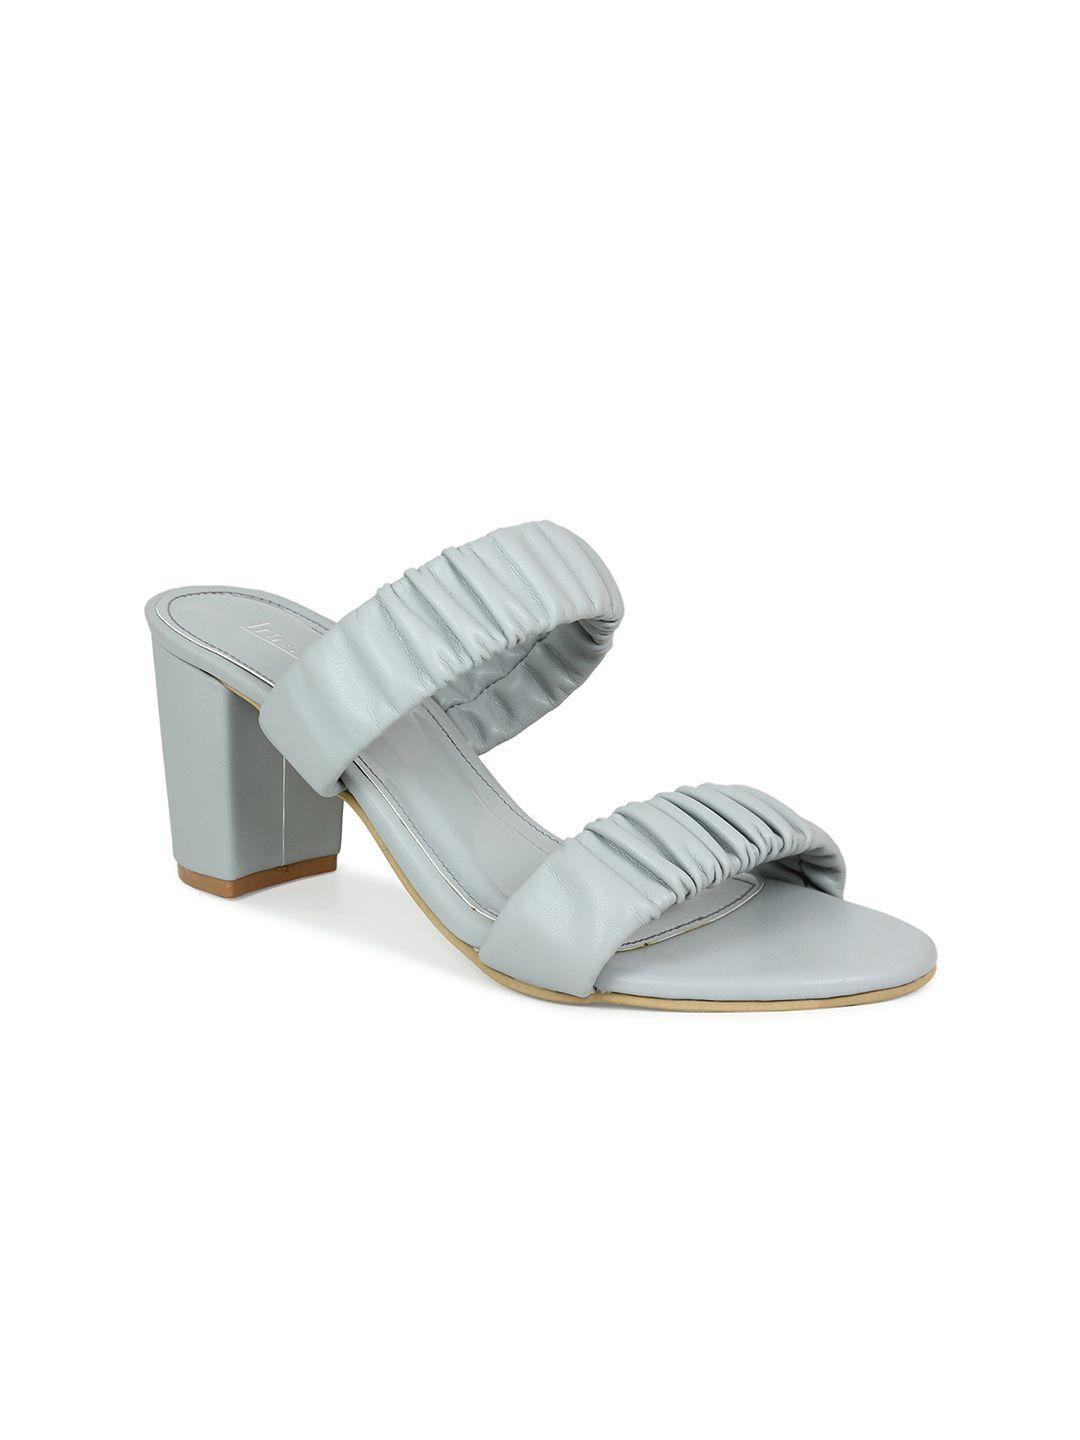 inc 5 women grey & grey ethnic clogs sandals